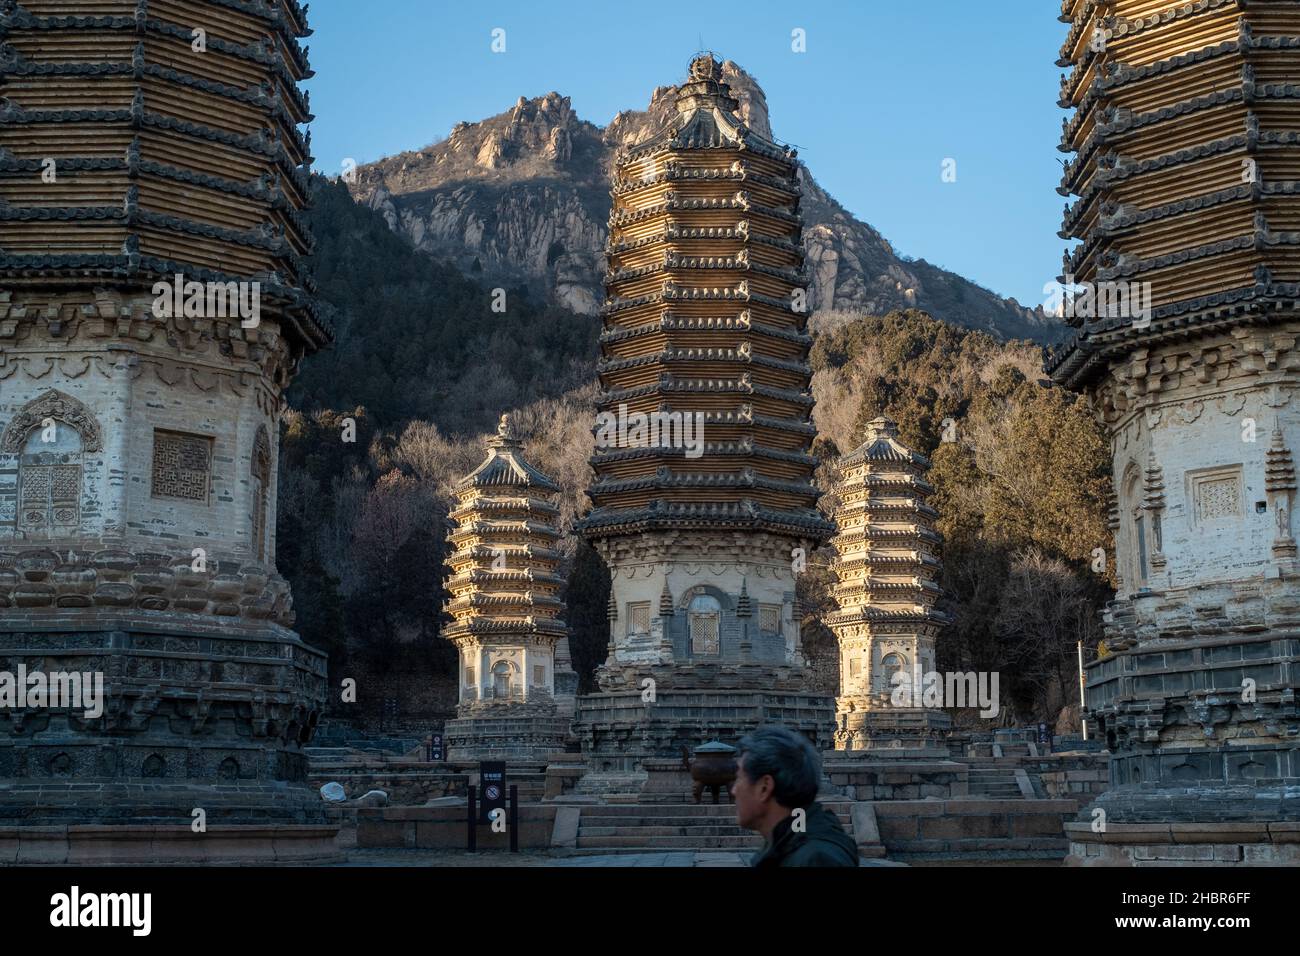 Yinshan Talin (Yinshan Pagoda park) in Yanshou Town, Changping District, Beijing, China. Stock Photo